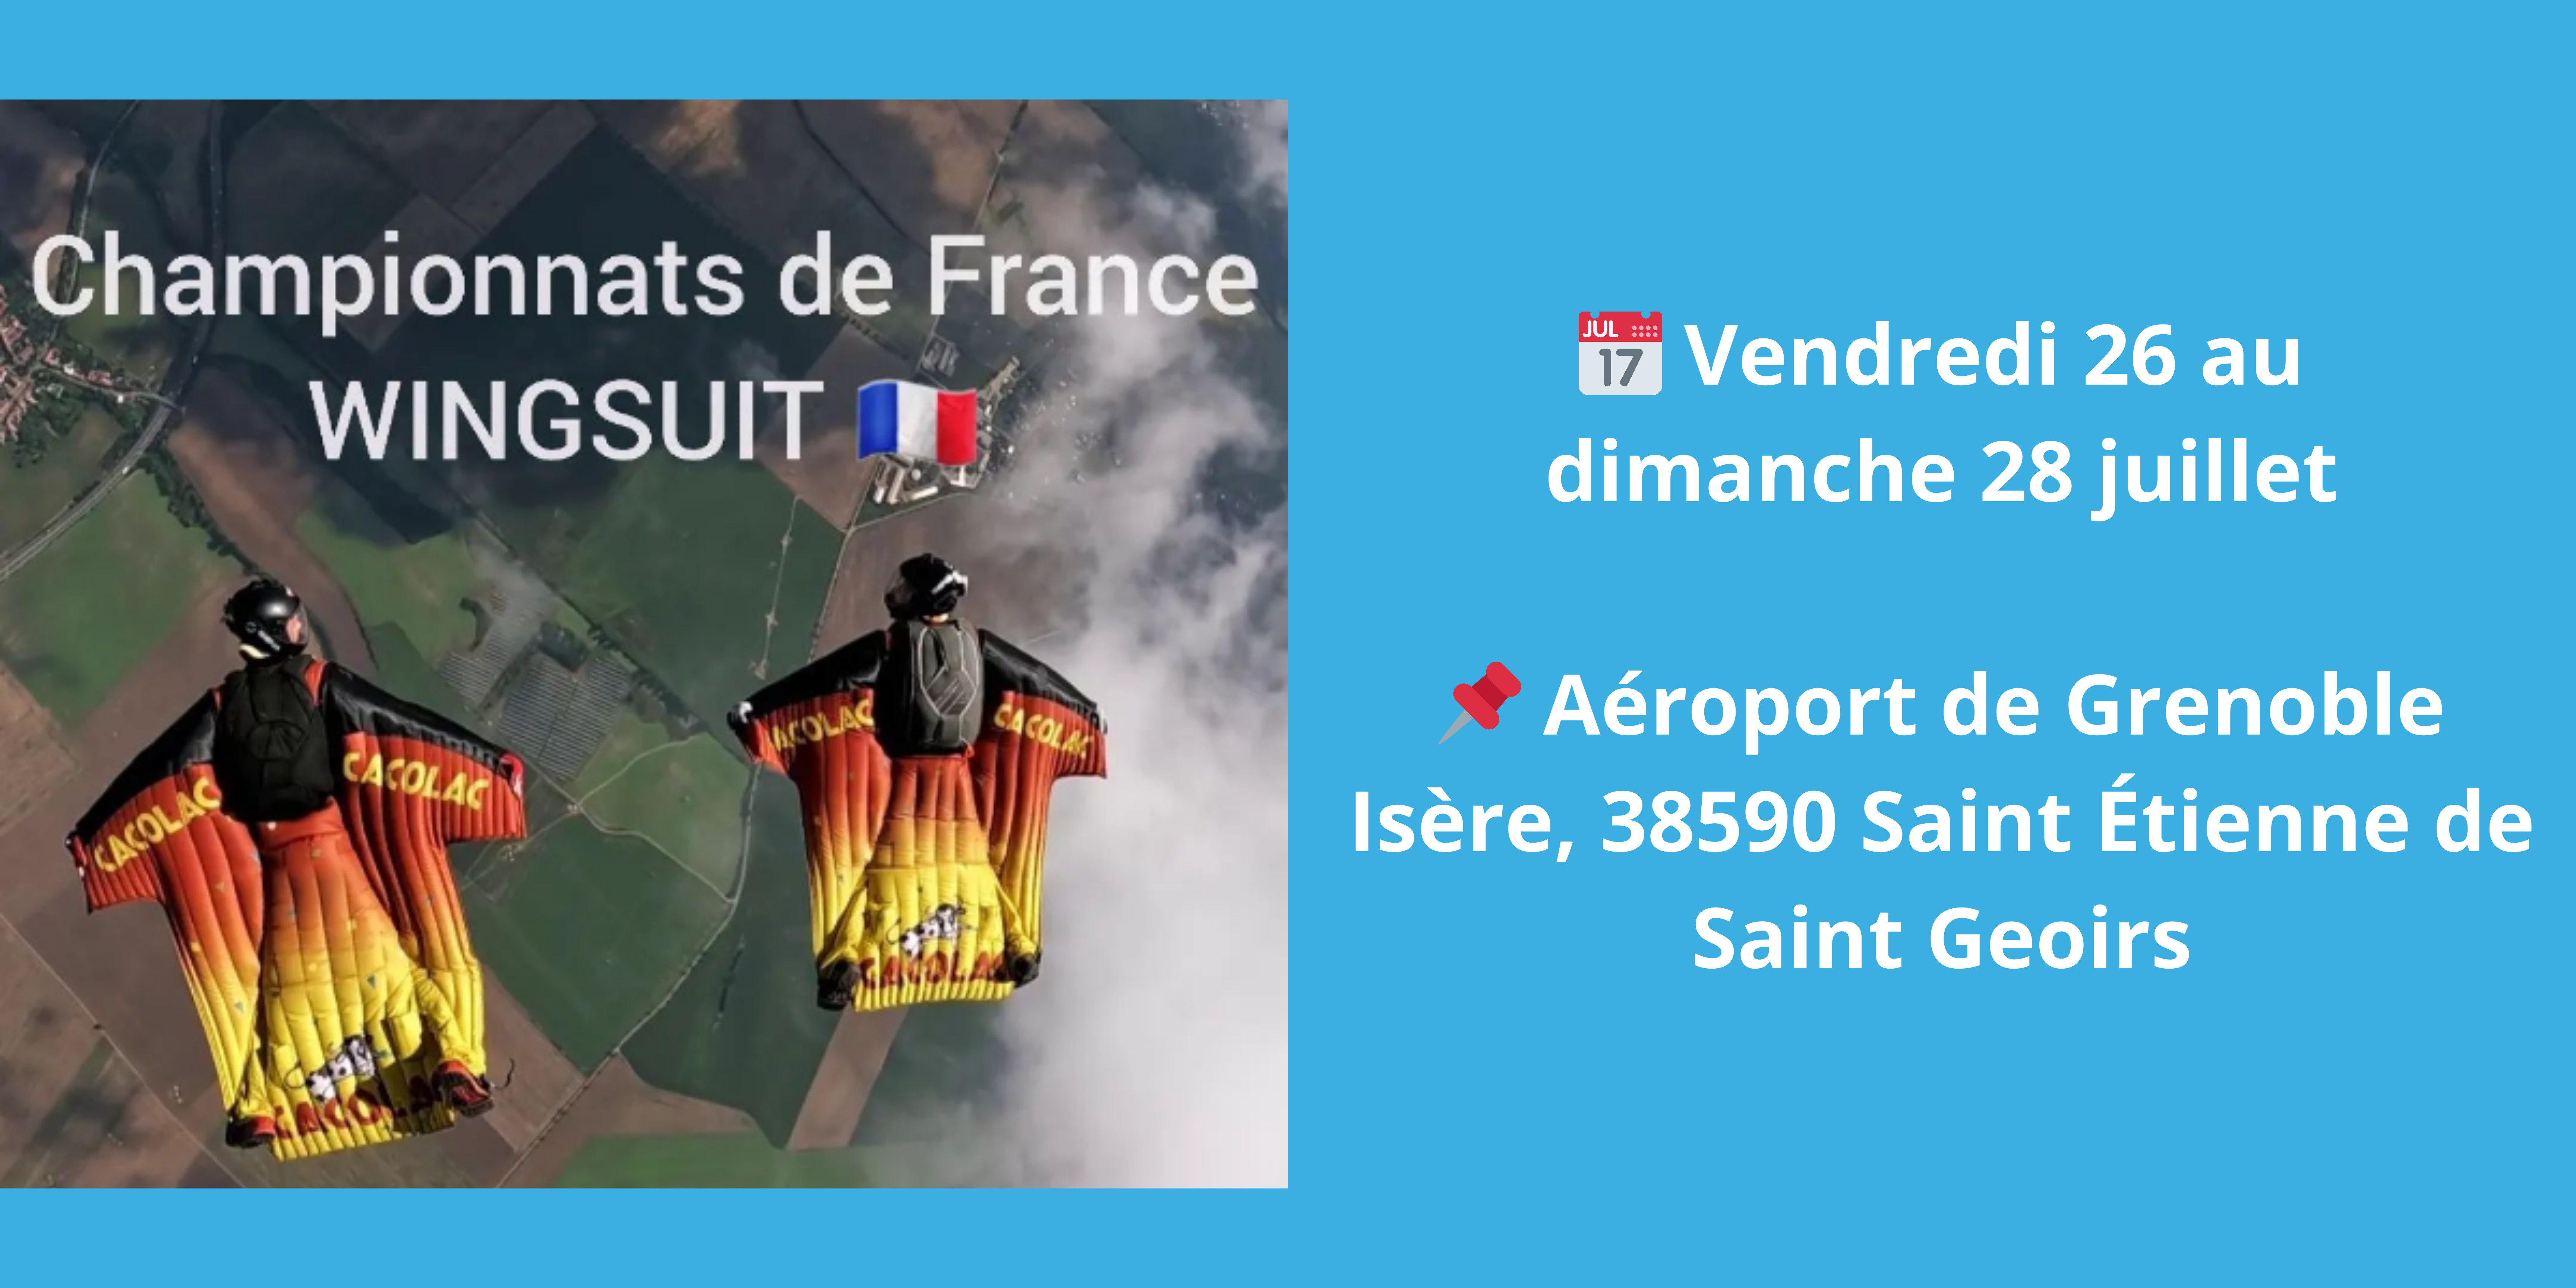 Championnat de France de Wingsuit du 26 au 28 juillet